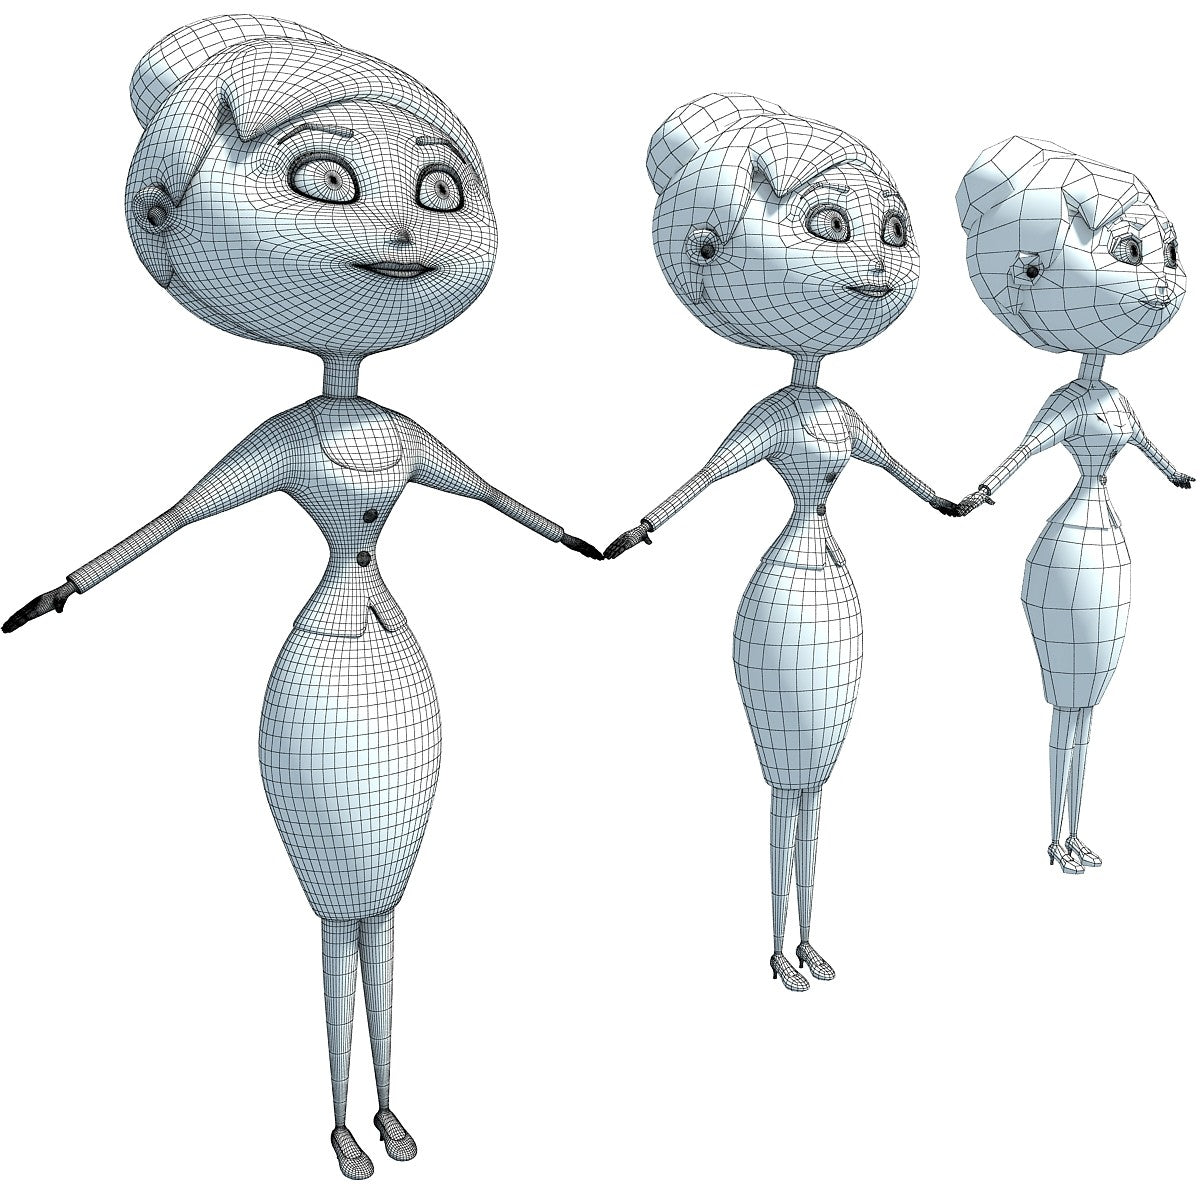 3D Characters Models